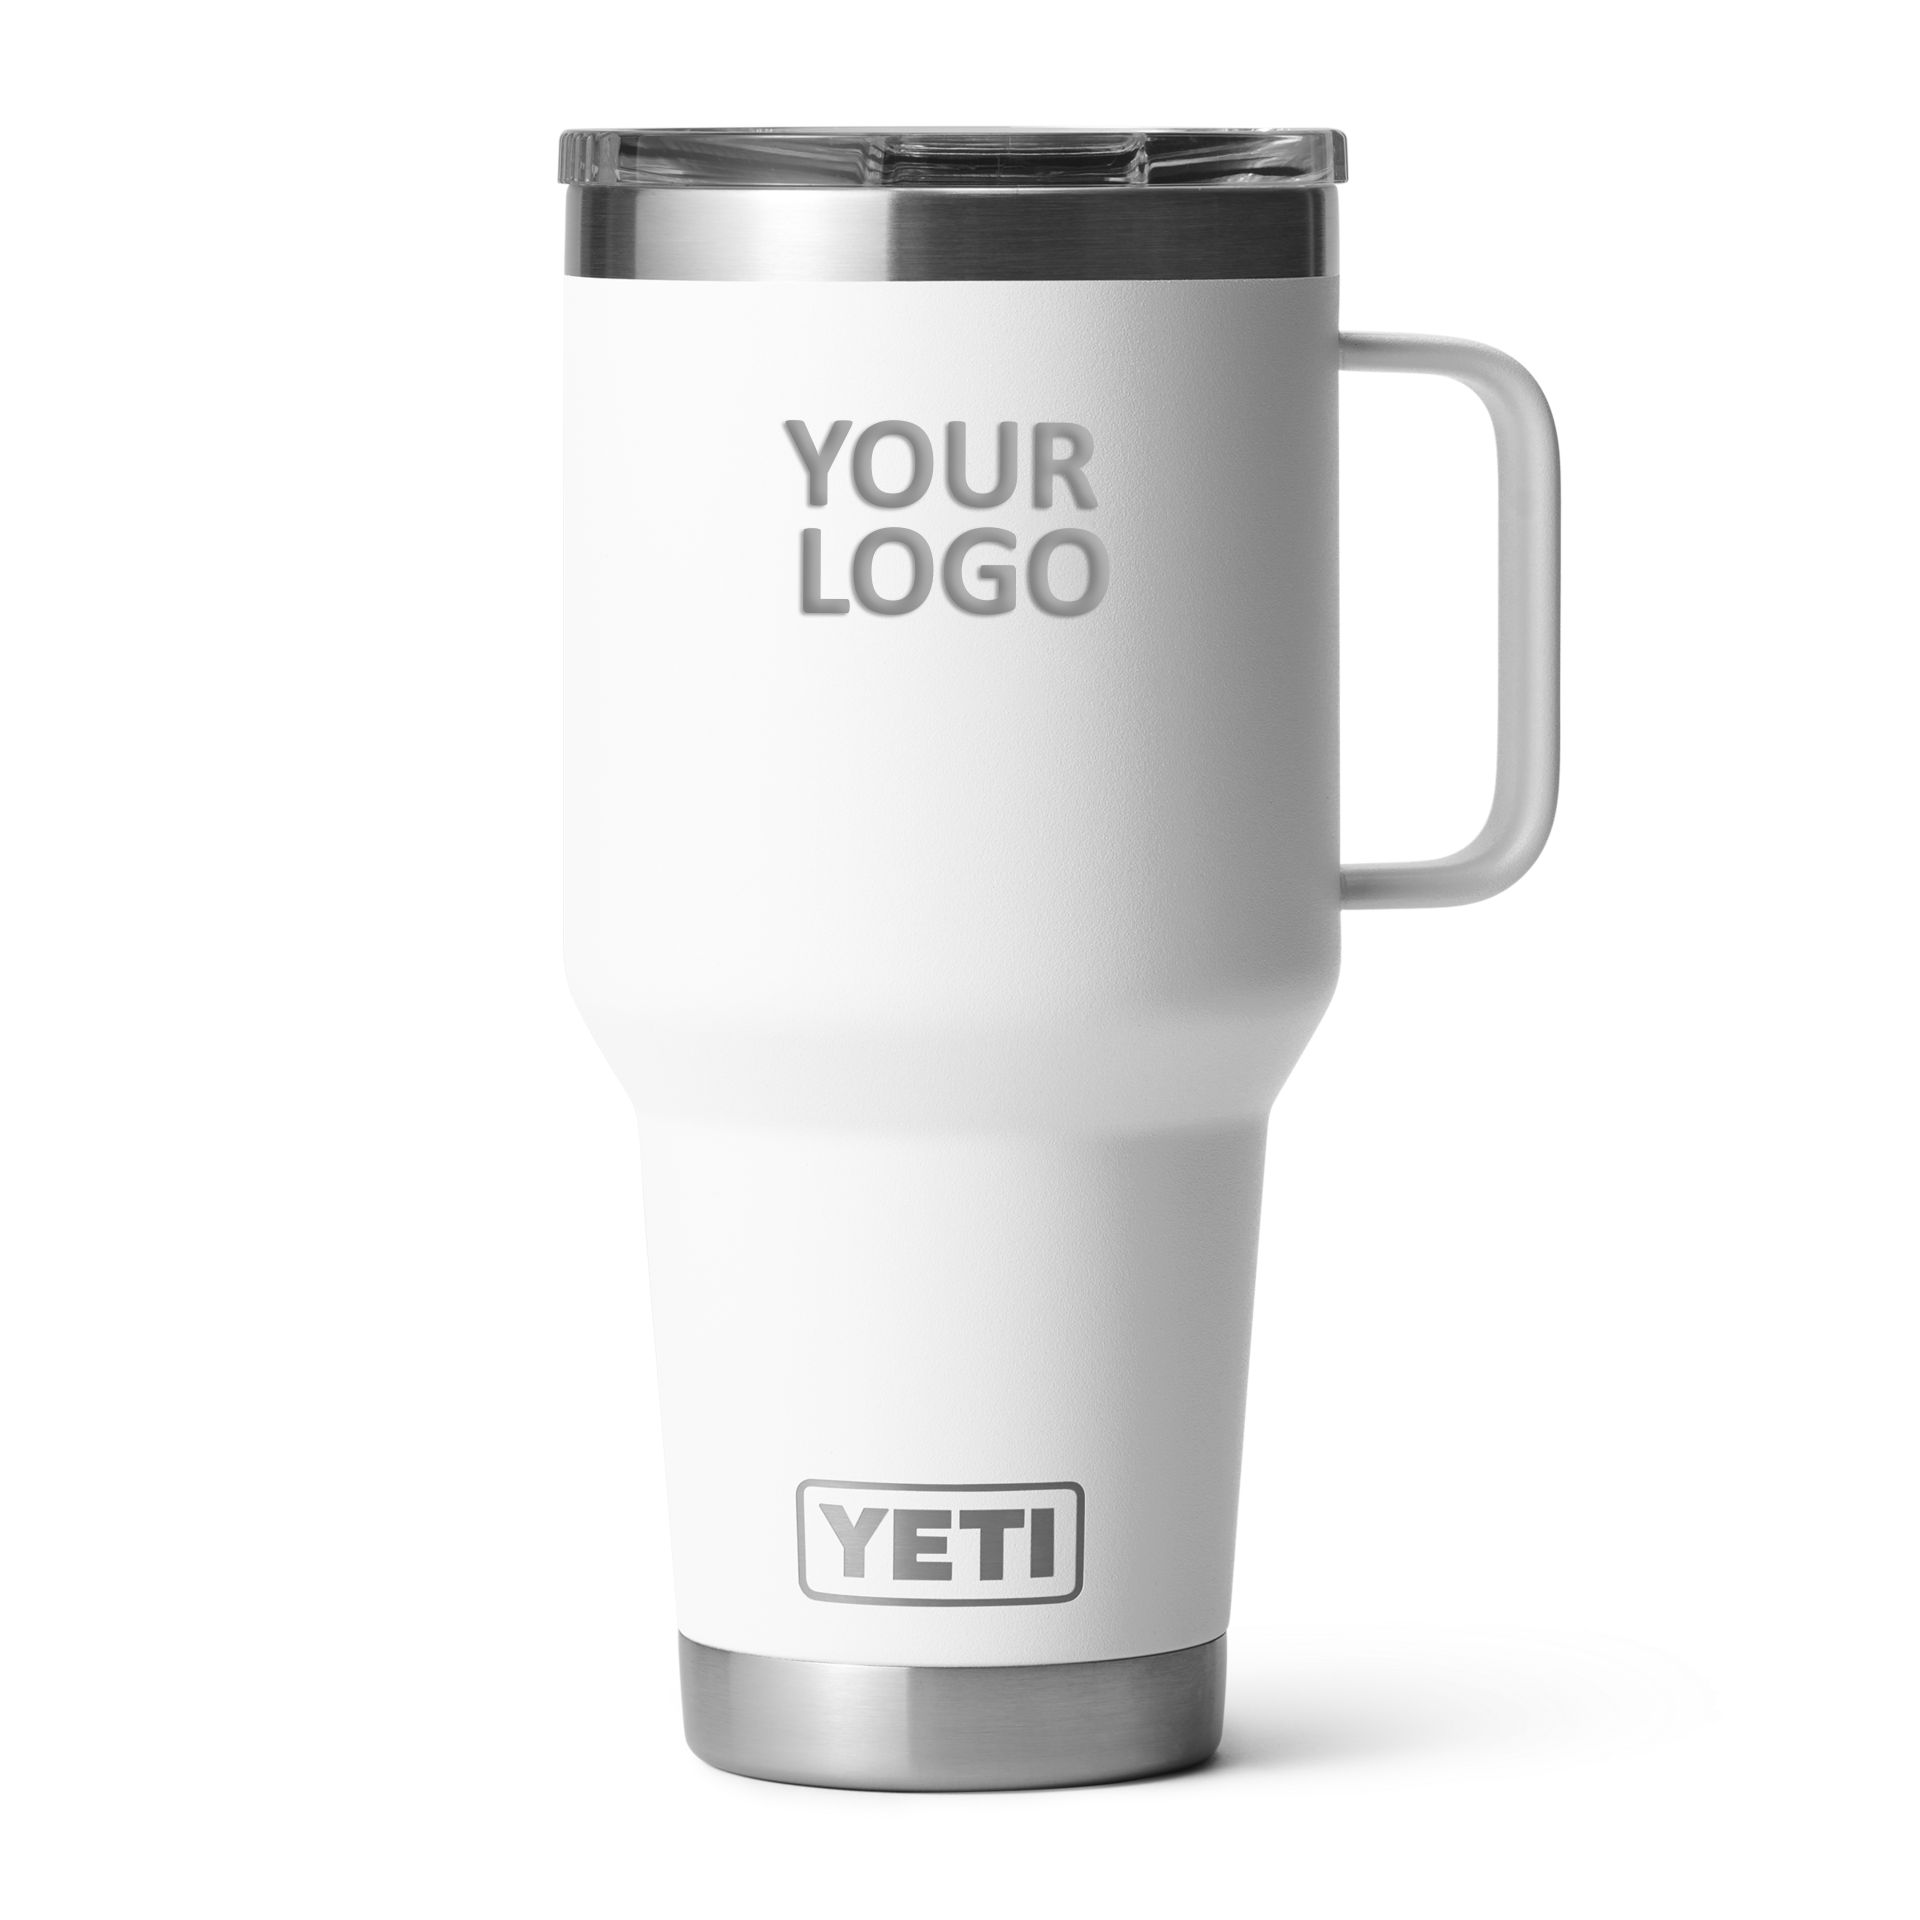 Custom Yeti Rambler 30 Oz Travel Mug With Stronghold Lid, White